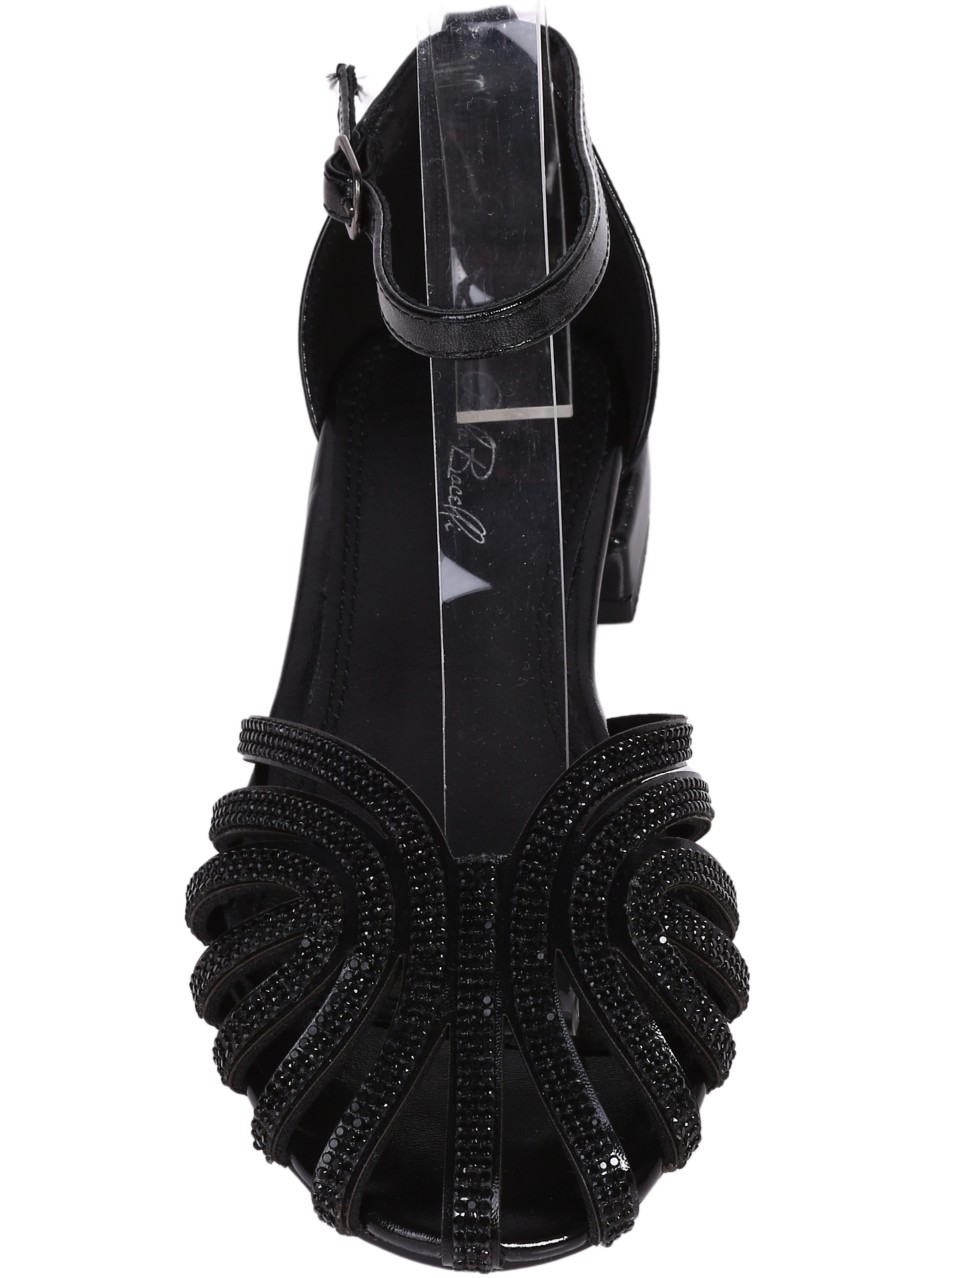 Елегантни дамски сандали в черно с декоративни камъни 4M-24208 black